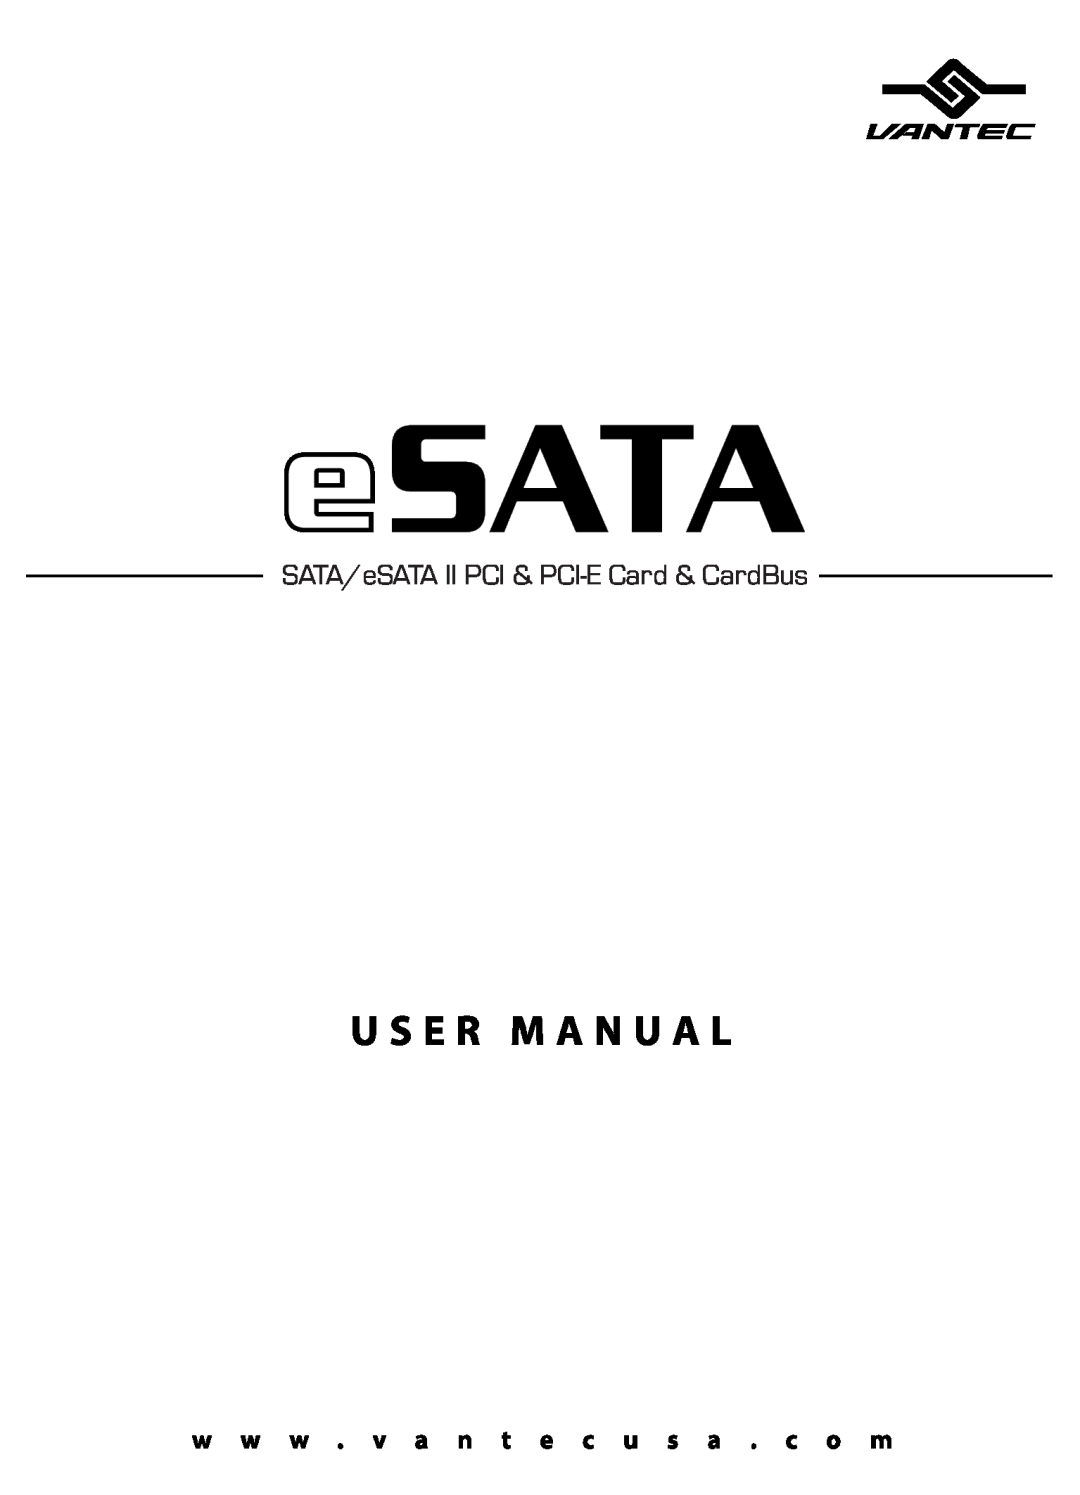 Vantec manual SATA/eSATA II PCI & PCI-E Card & CardBus 